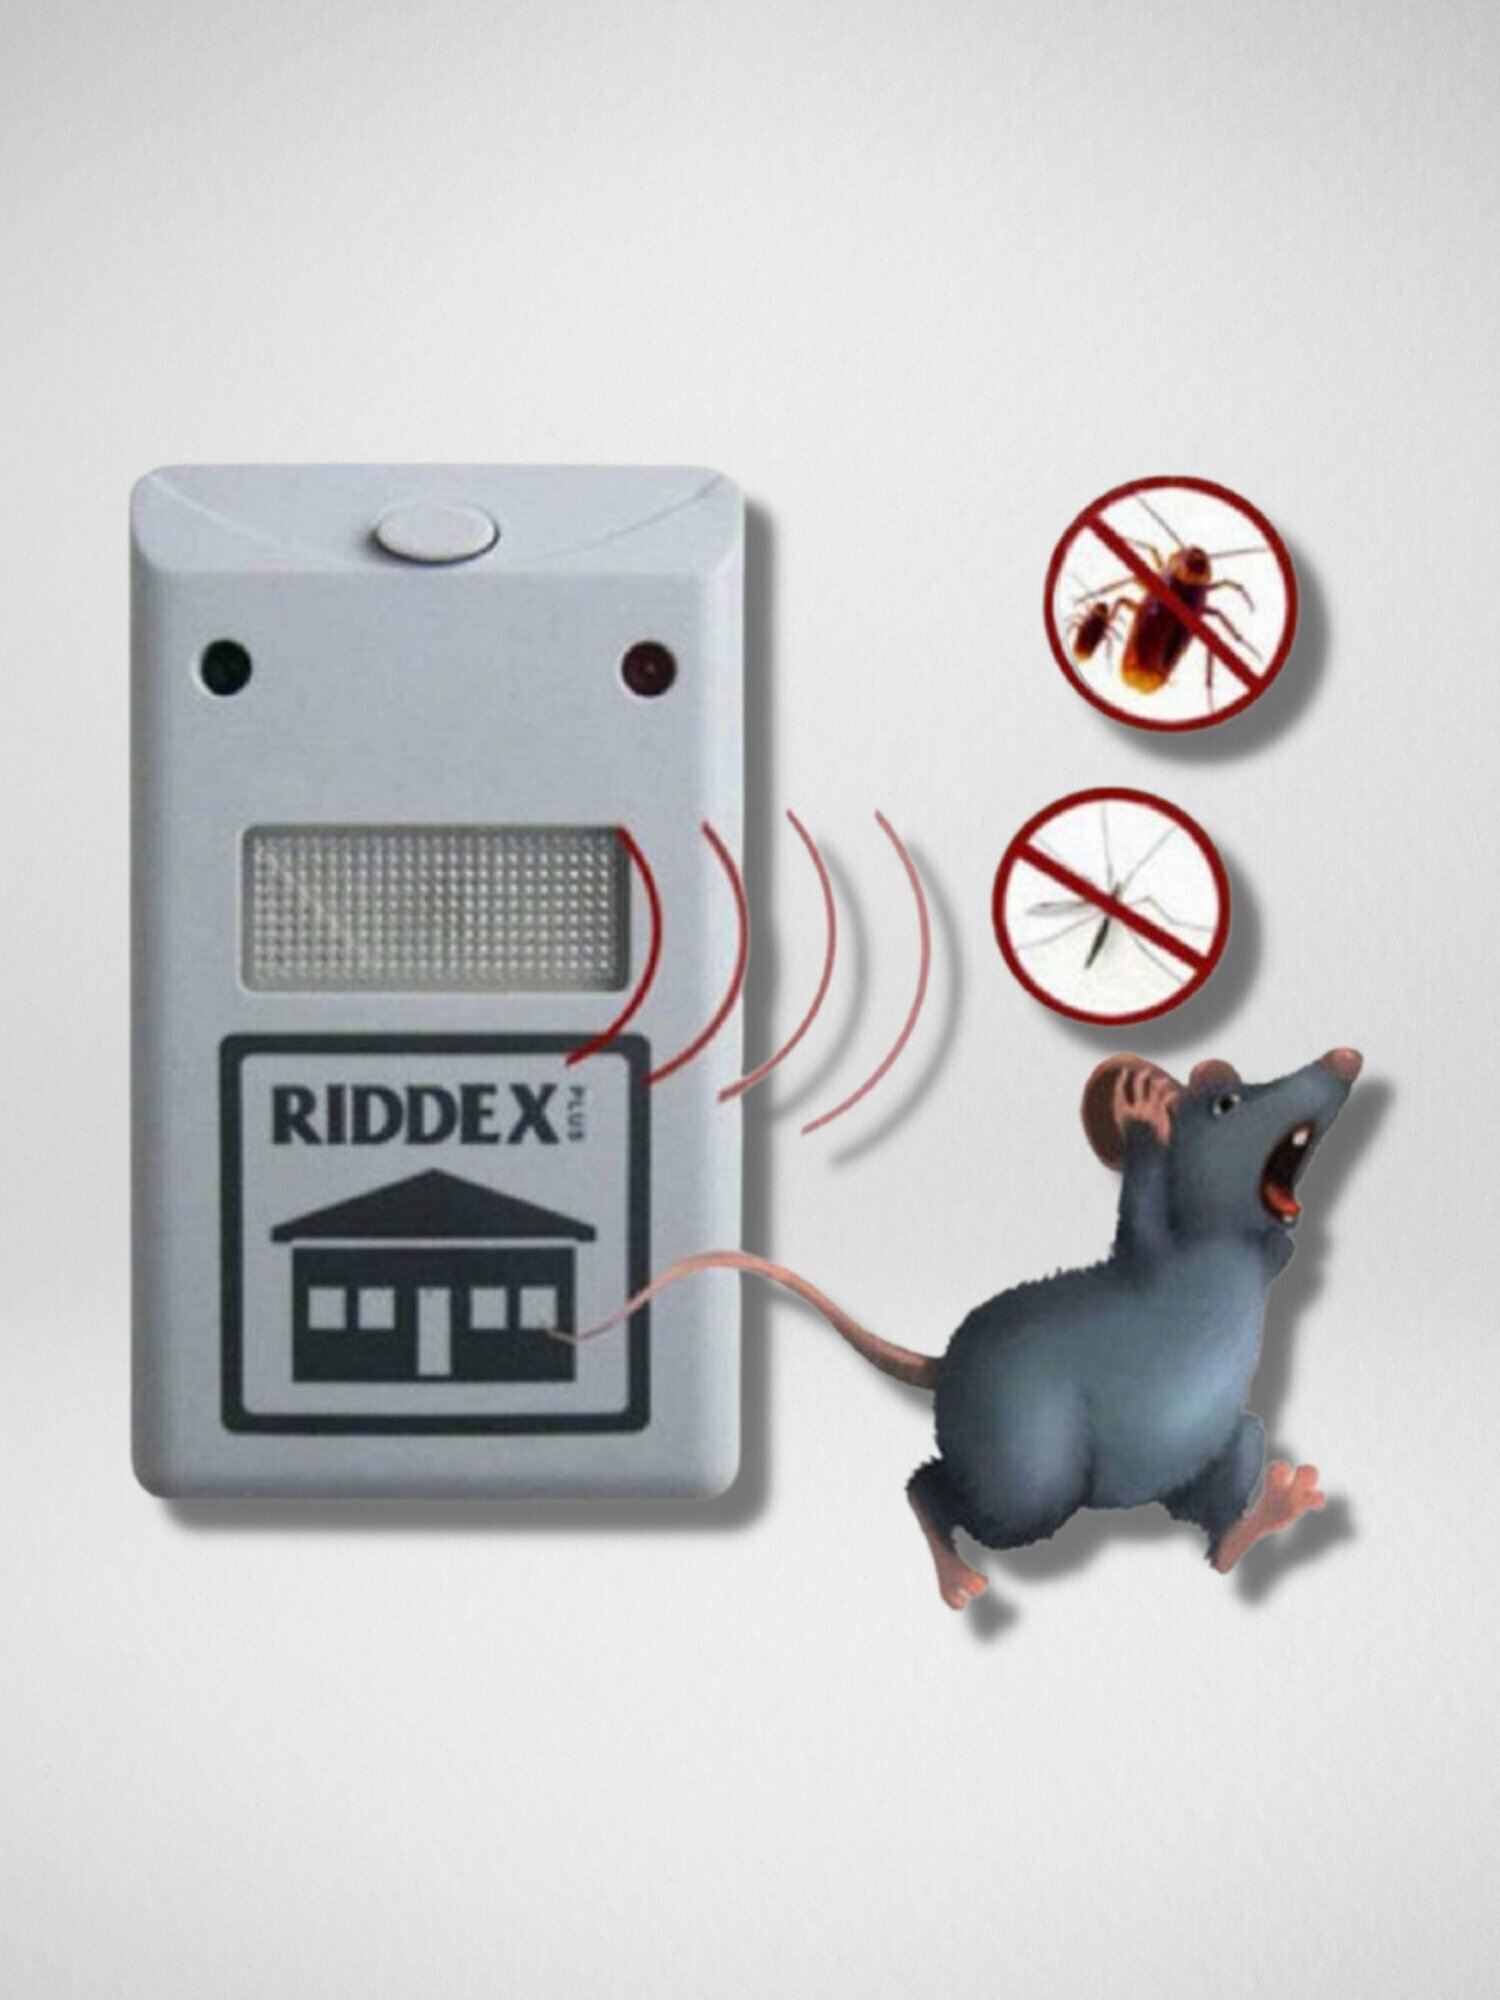 Электромагнитный отпугиватель RIDDEX Plus (200 квм)